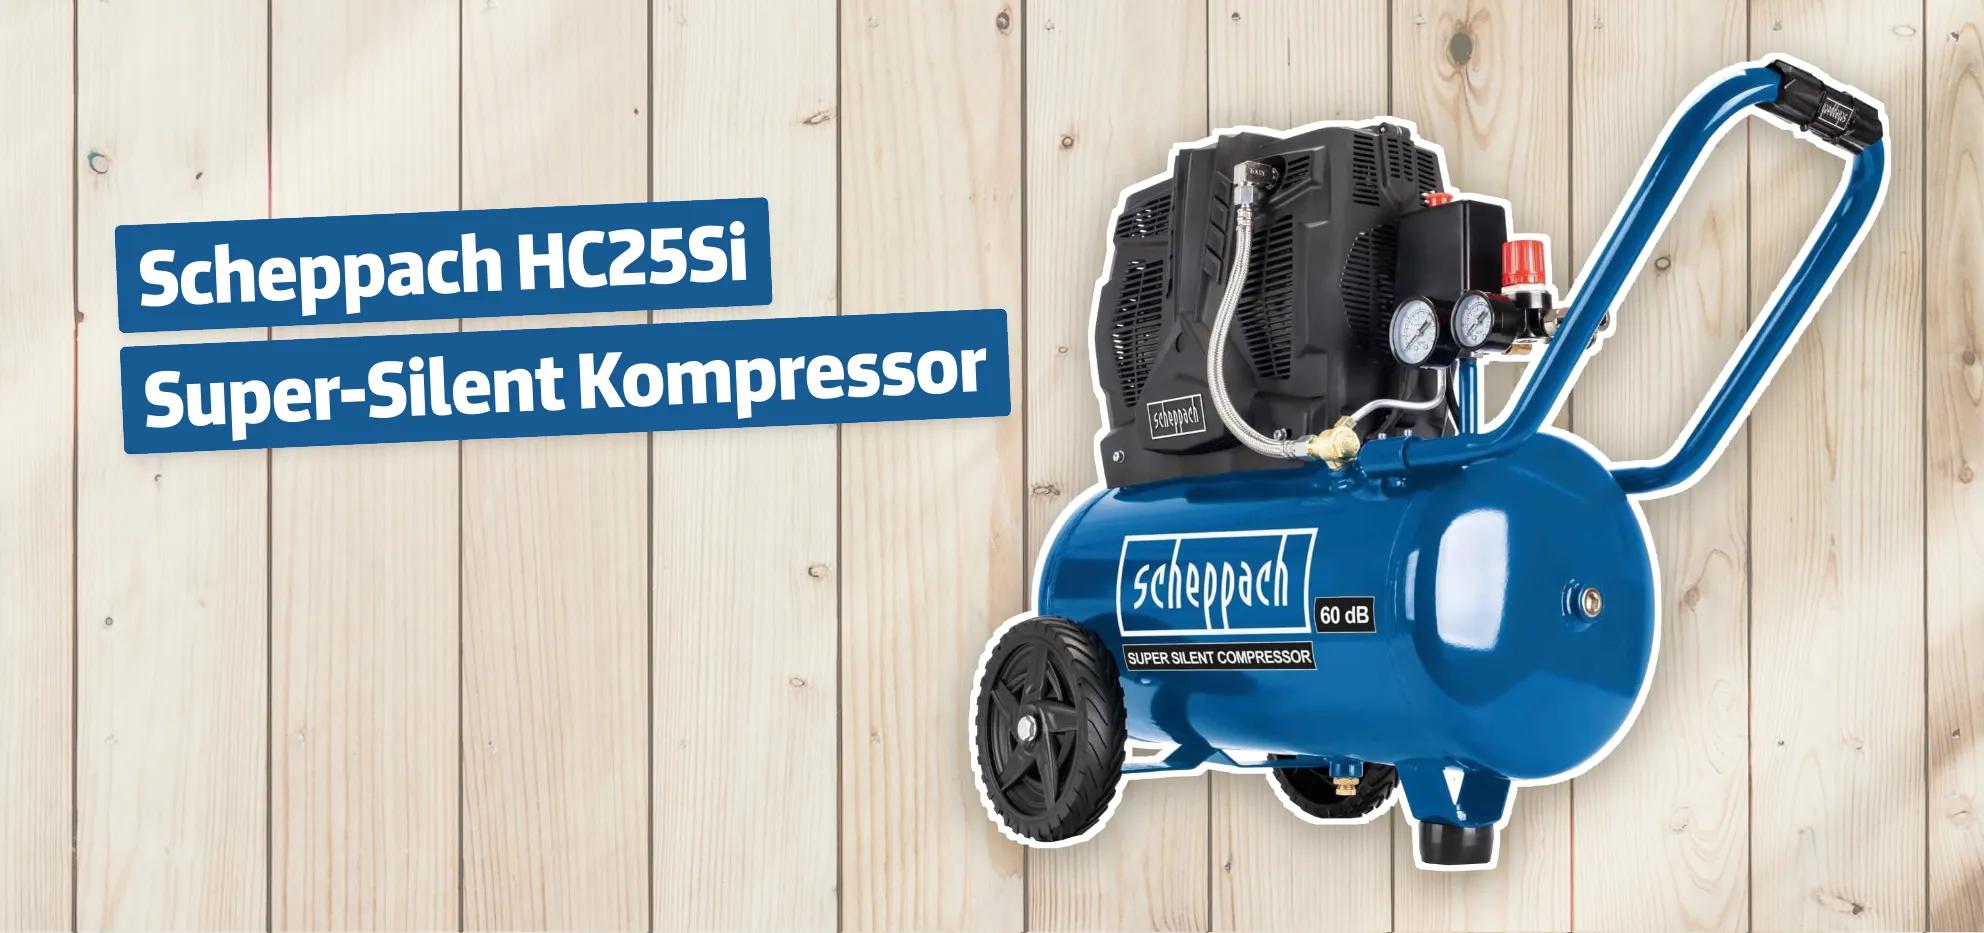 Scheppach HC25Si Super-Silent Kompressor